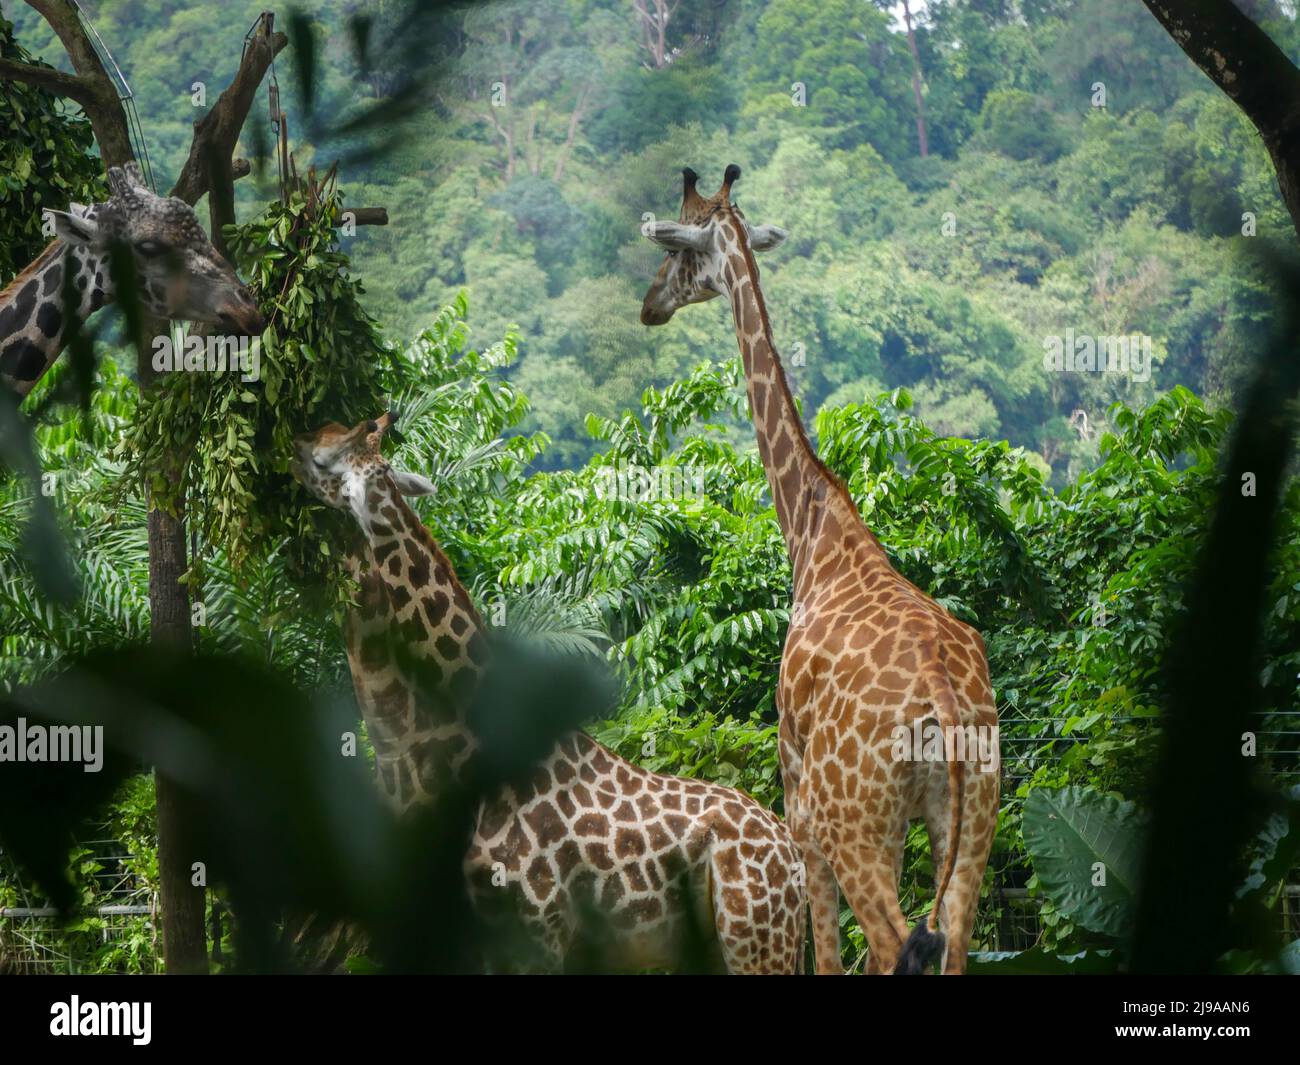 Girafe : grand mammifère africain à capuche appartenant au genre Giraffa. C'est le plus grand animal terrestre vivant et le plus grand ruminant de la Terre. Banque D'Images